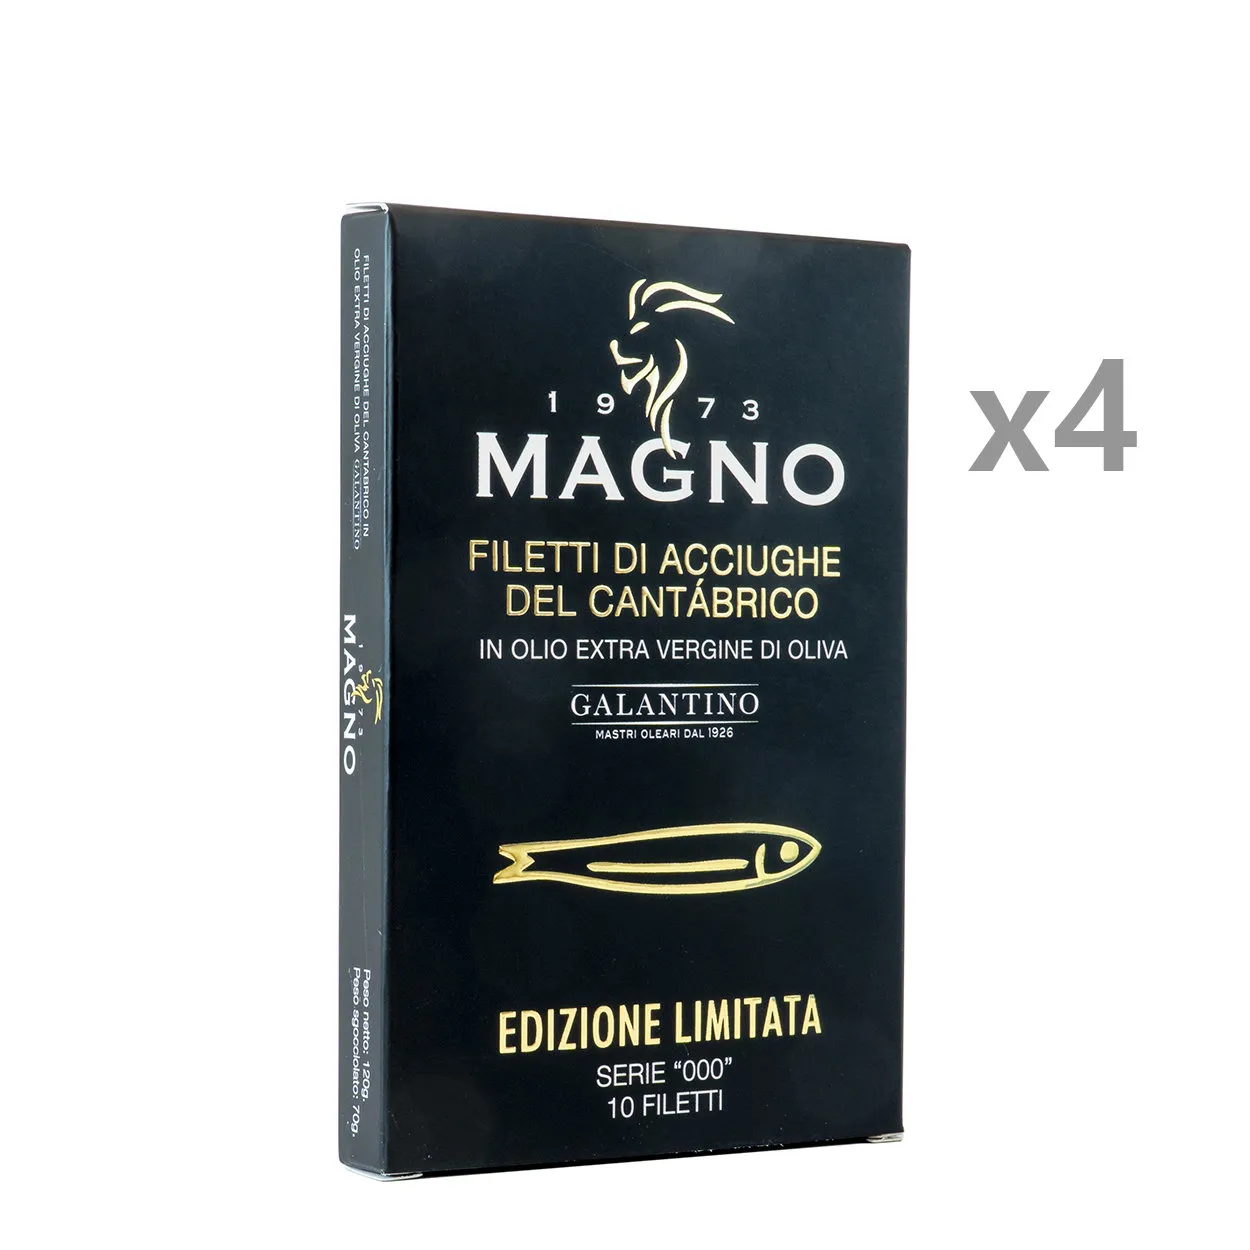 4 confezioni - Filetti di Acciughe del Cantabrico "EDIZIONE LIMITATA" Serie "000" 120 gr